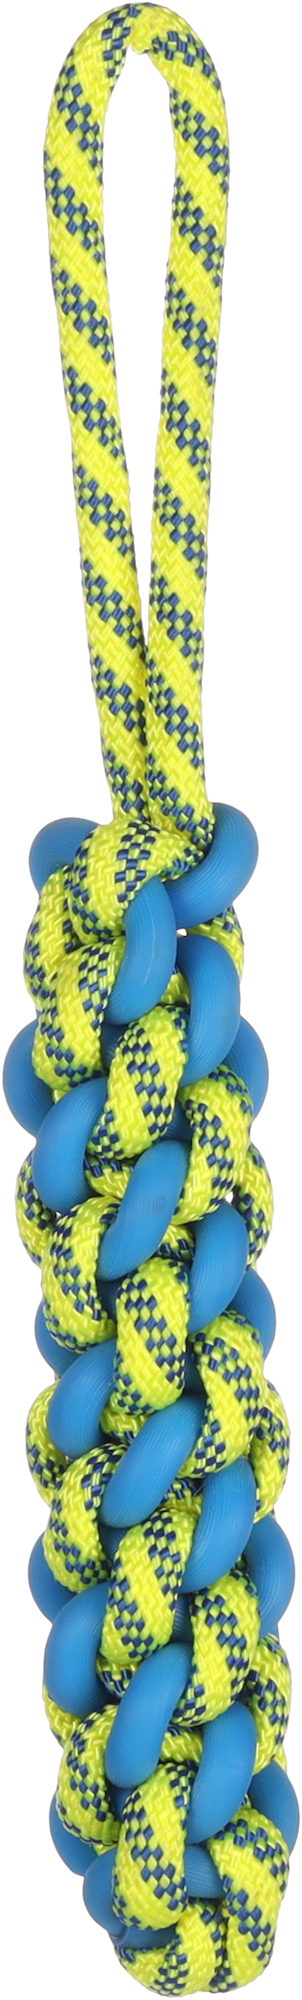 Hundespielzeug Tofla Ziehstab blau/gelb aus strapazierfähigem Gummi und Nylon